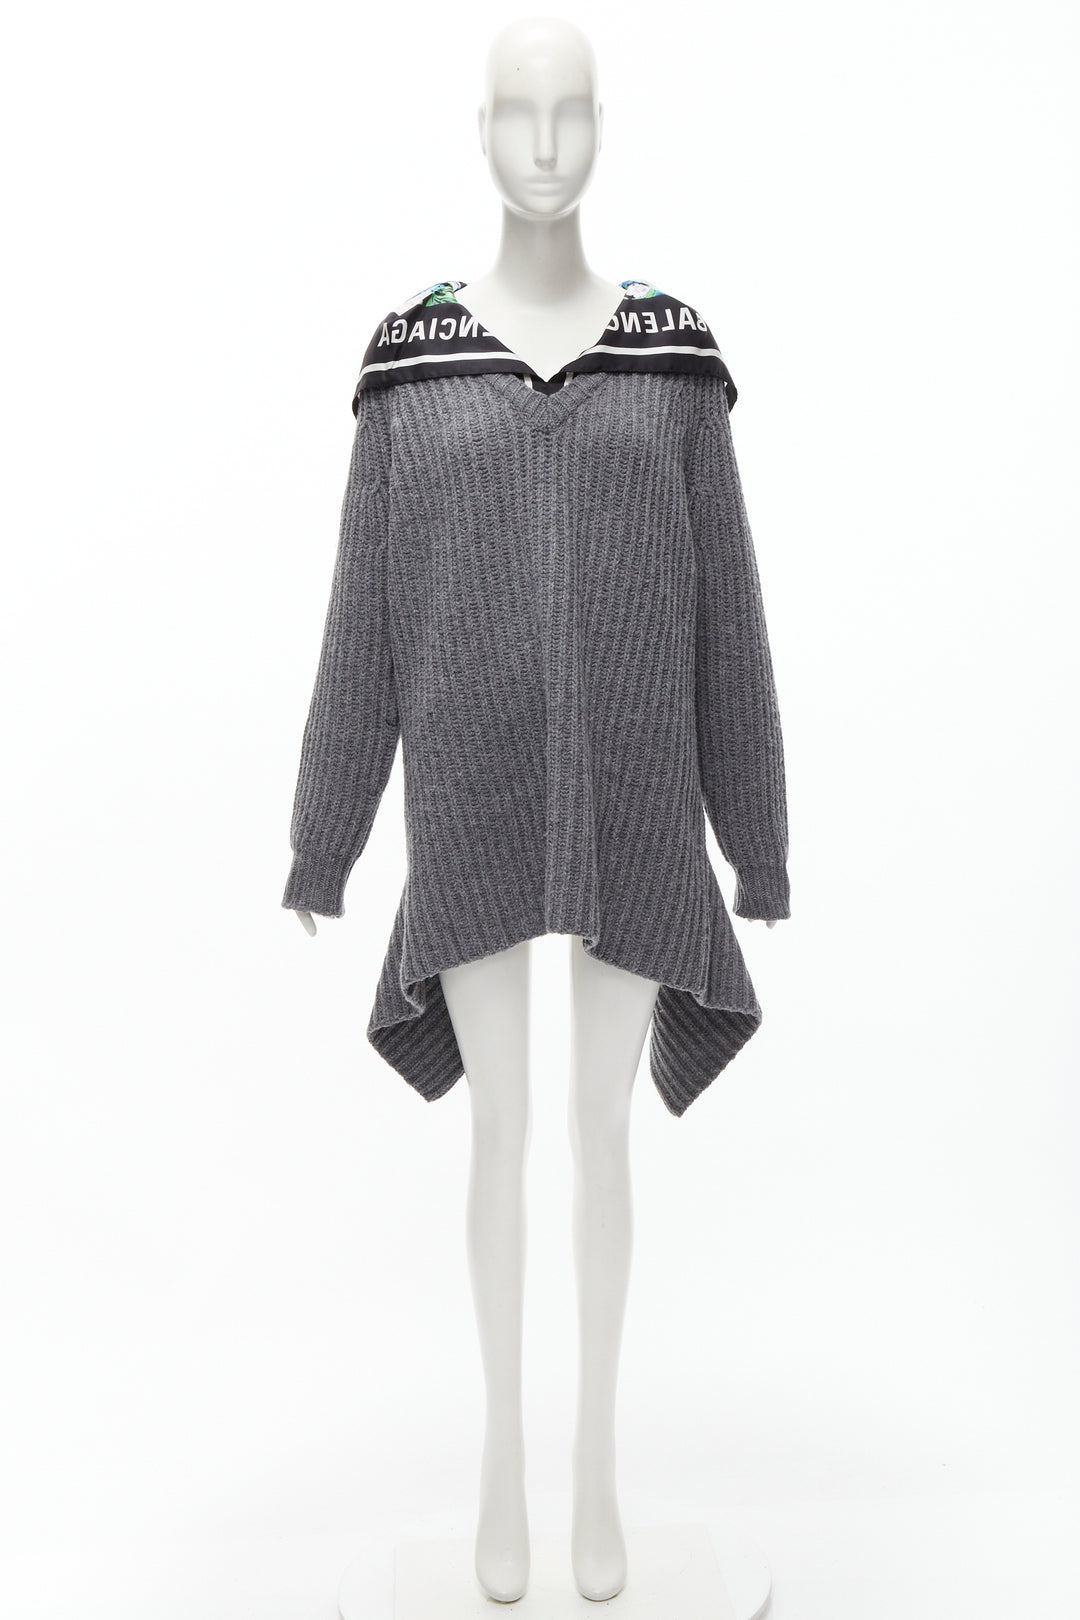 BALENCIAGA 2018 Demna grey wool silk scarf collar detached hem sweater FR34 XS